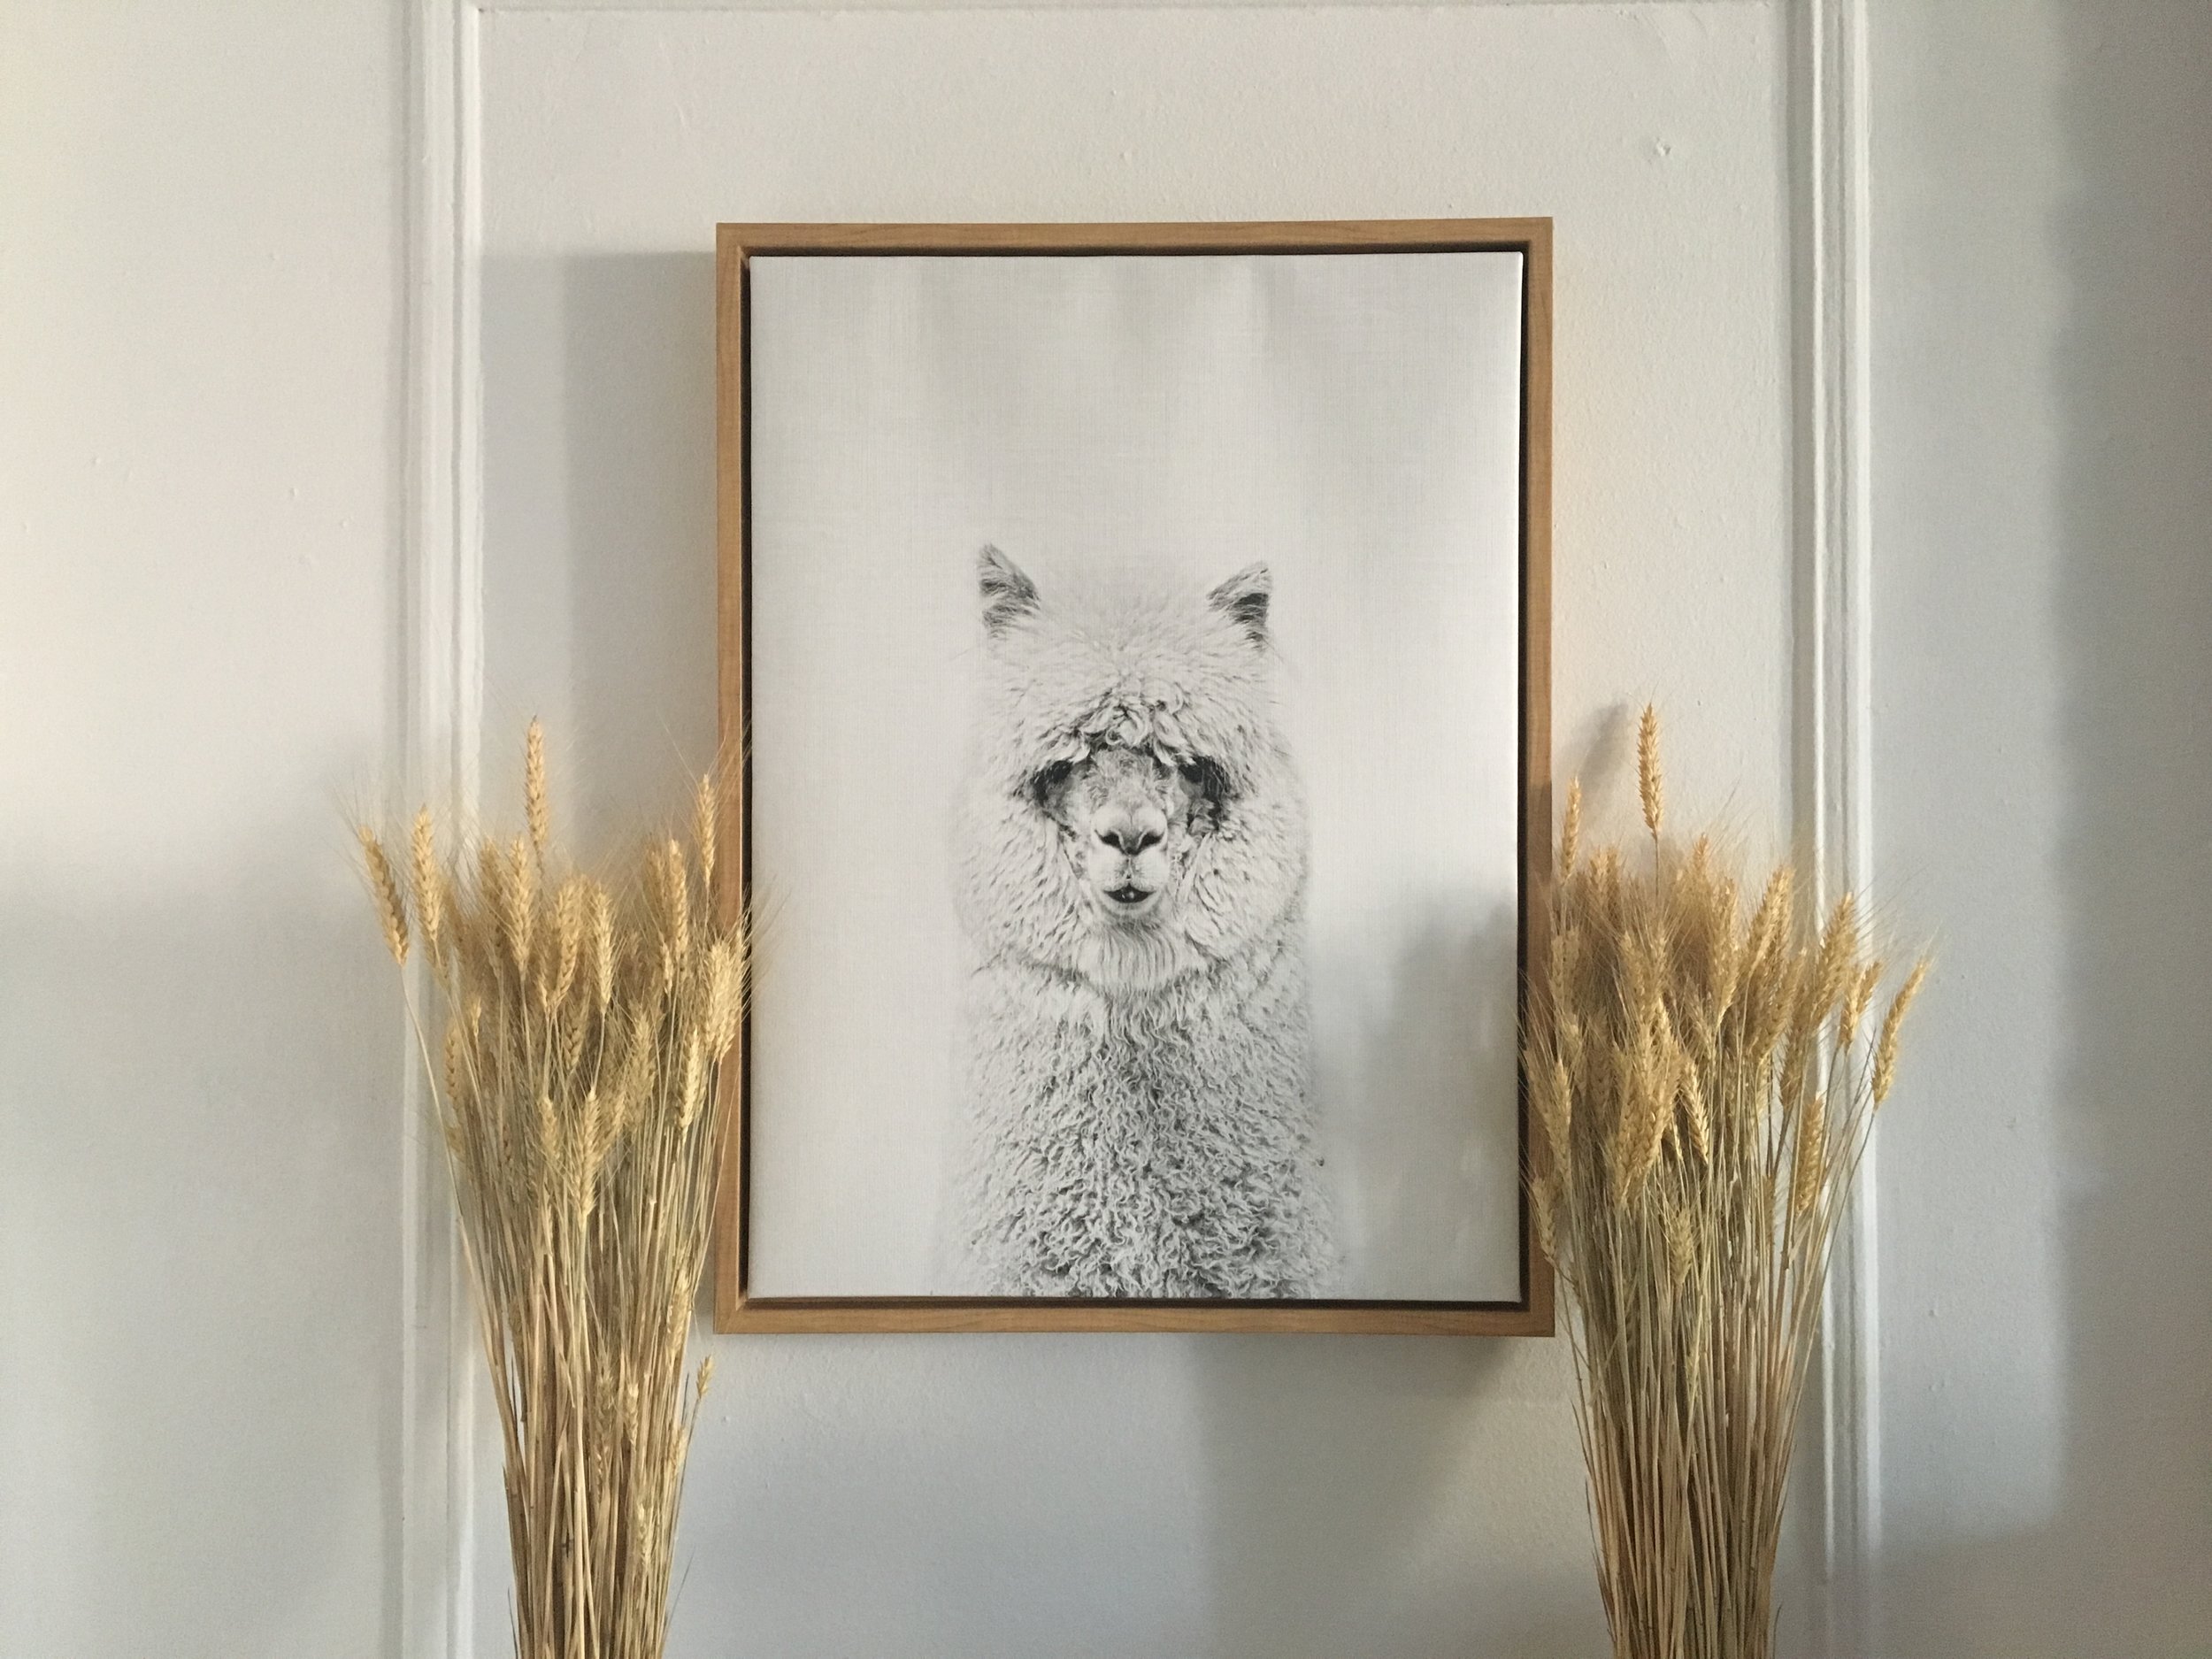  llama artwork 